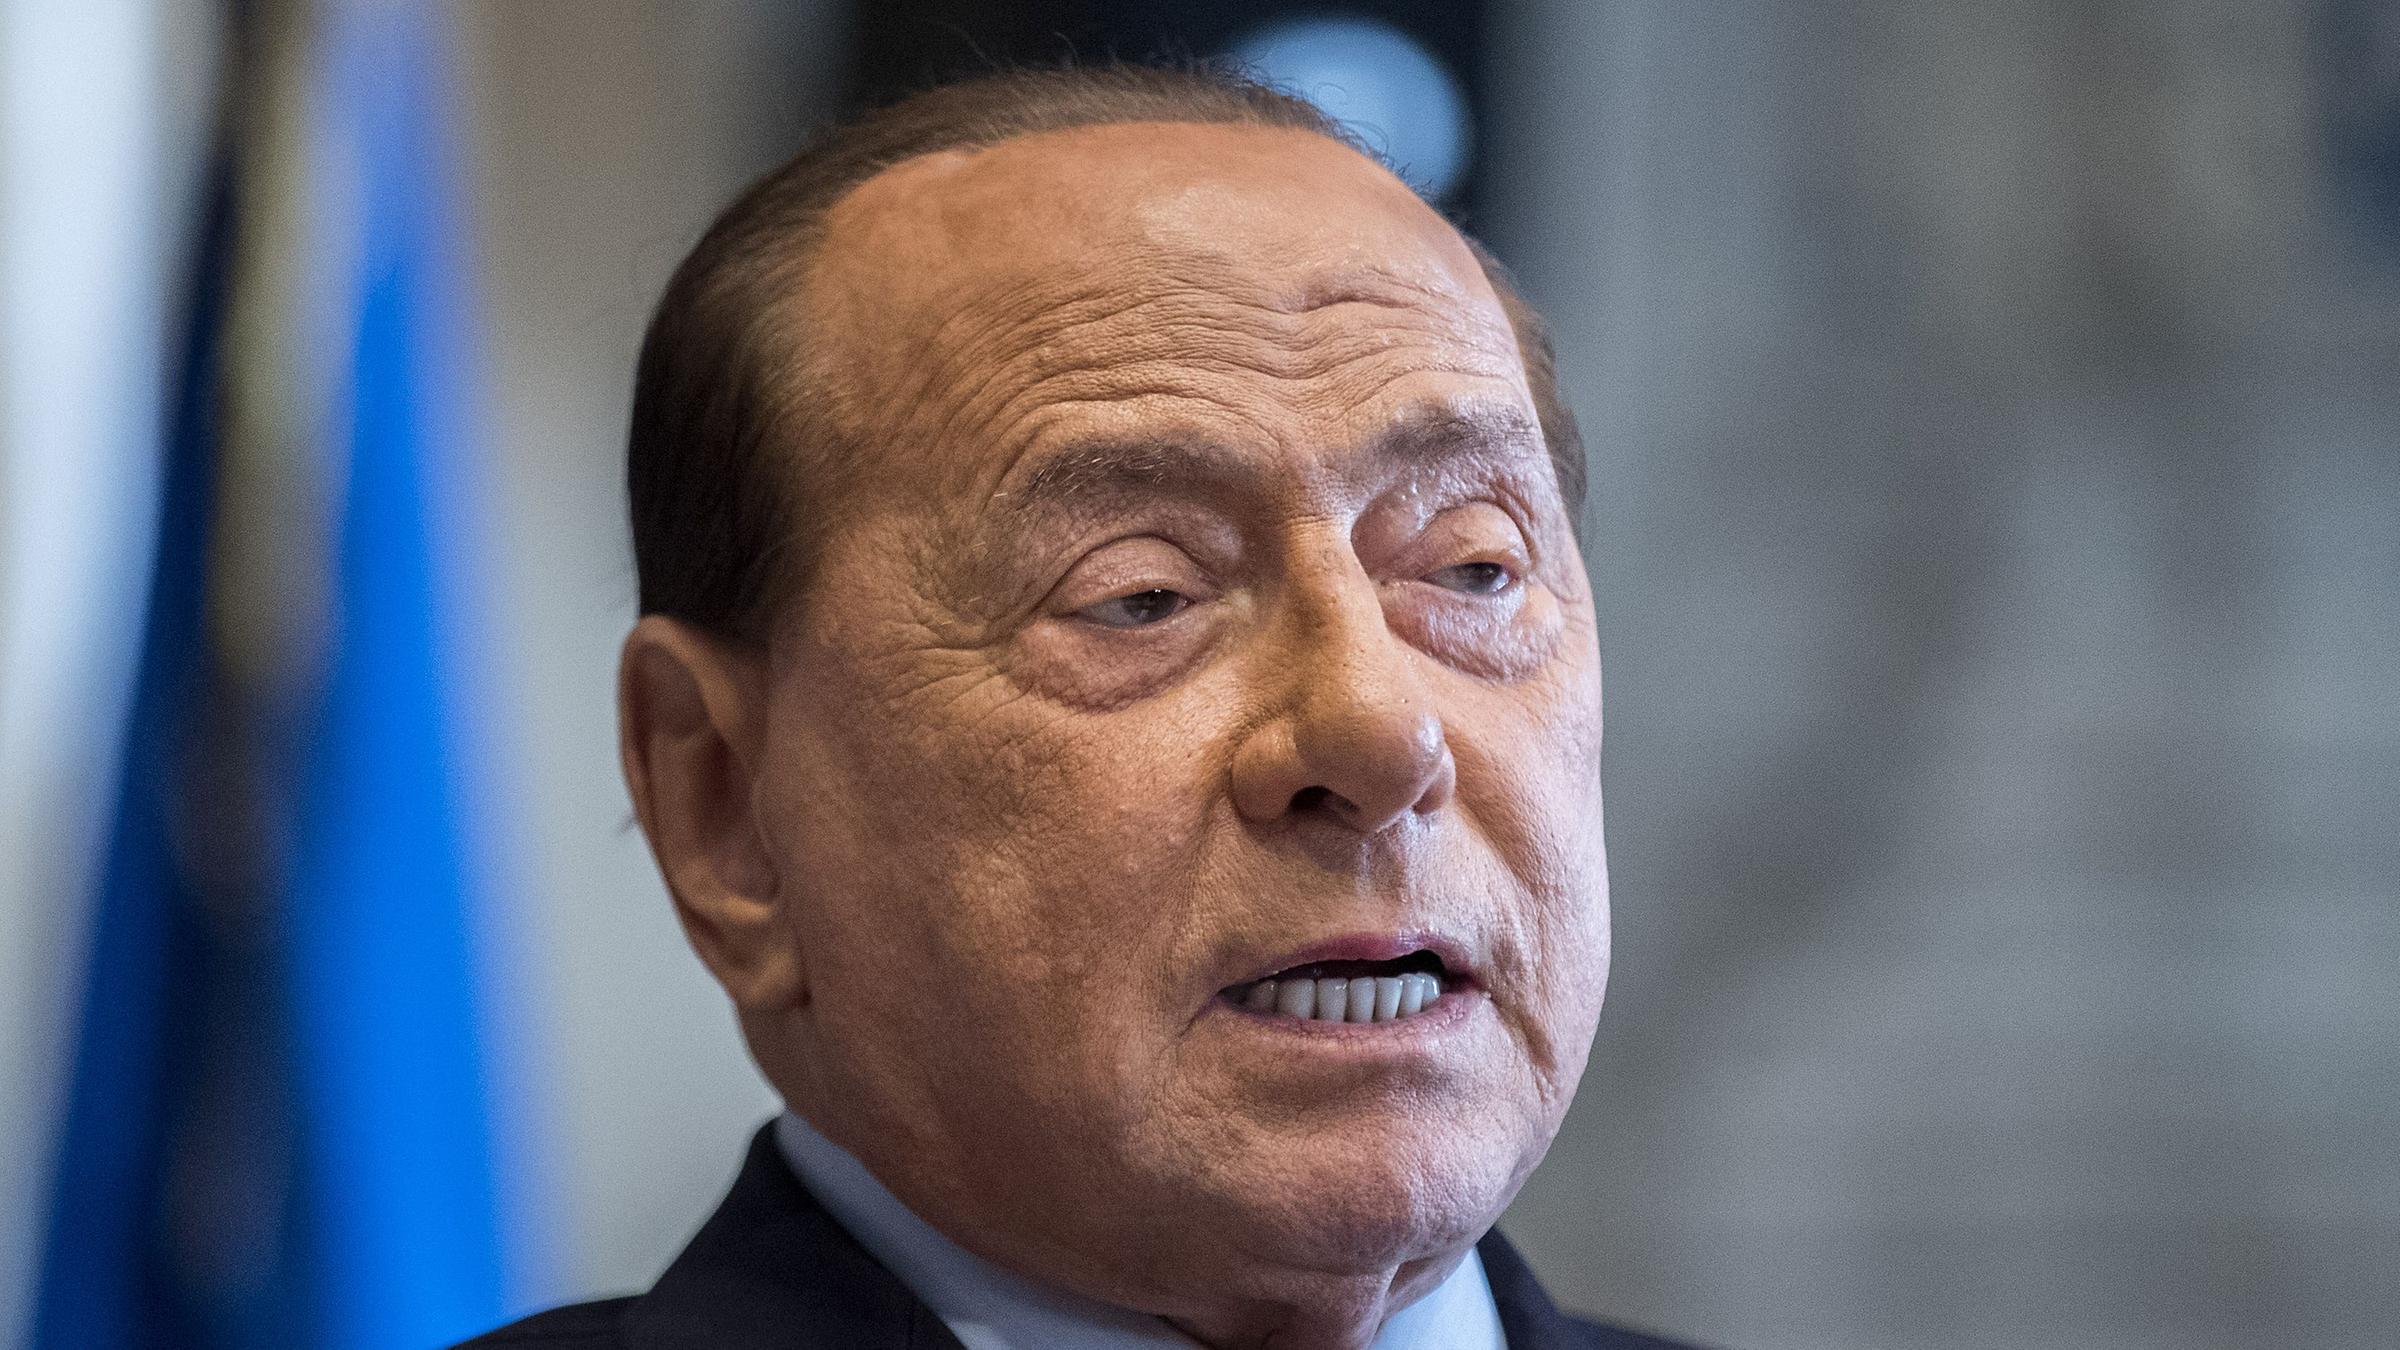 Silvio Berlusconi, former prime minister of Italy.